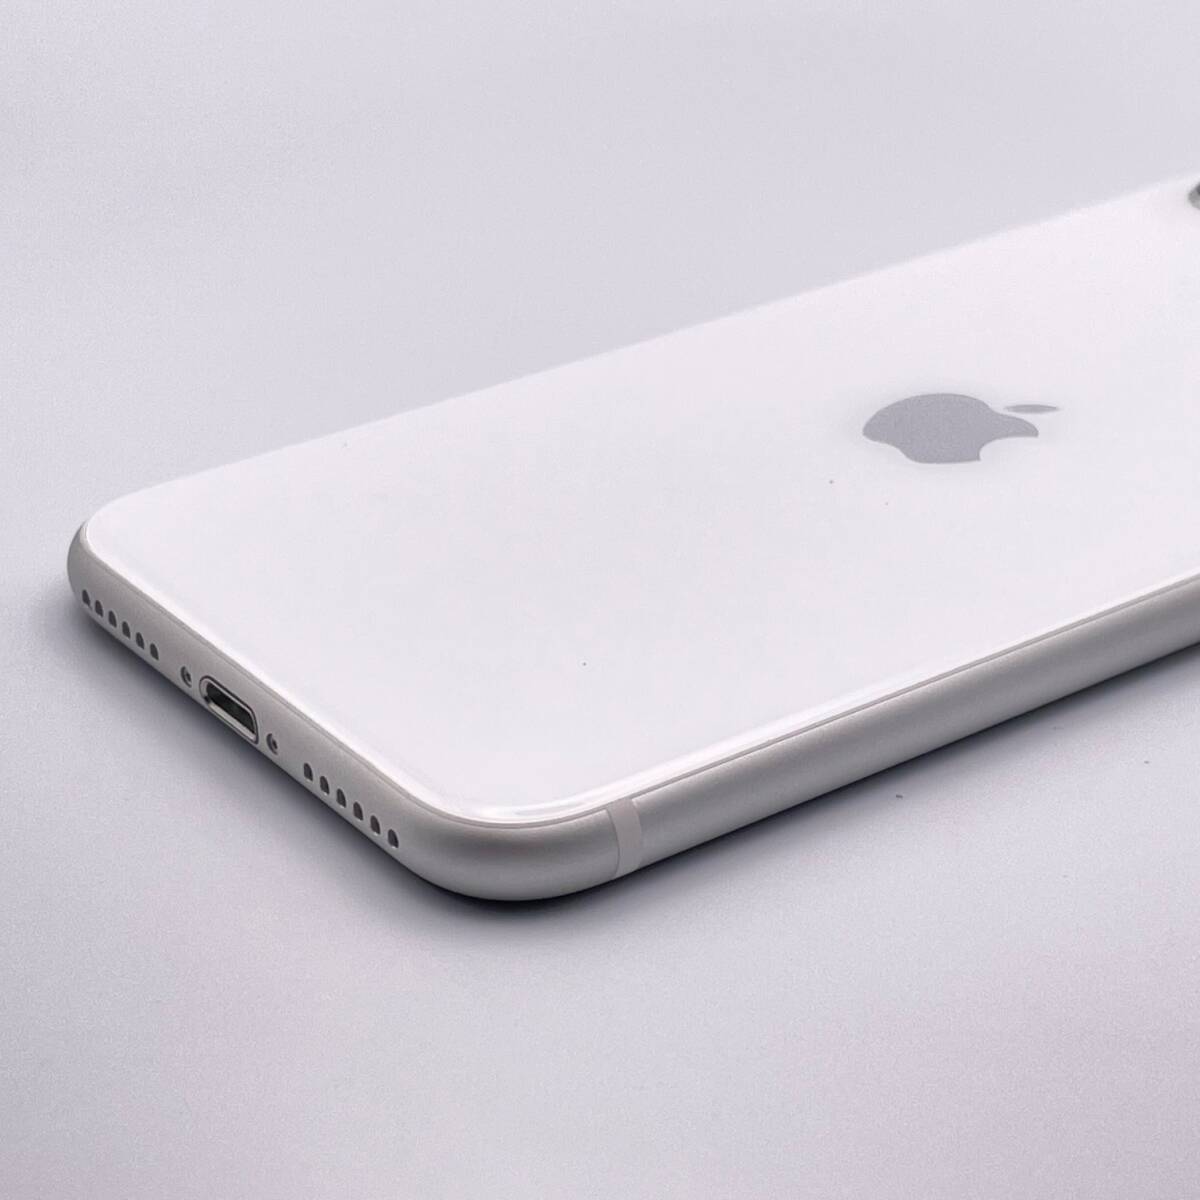  б/у товар Apple Apple iPhone SE no. 2 поколение 64GB белый SIM свободный 1 иен из распродажа 